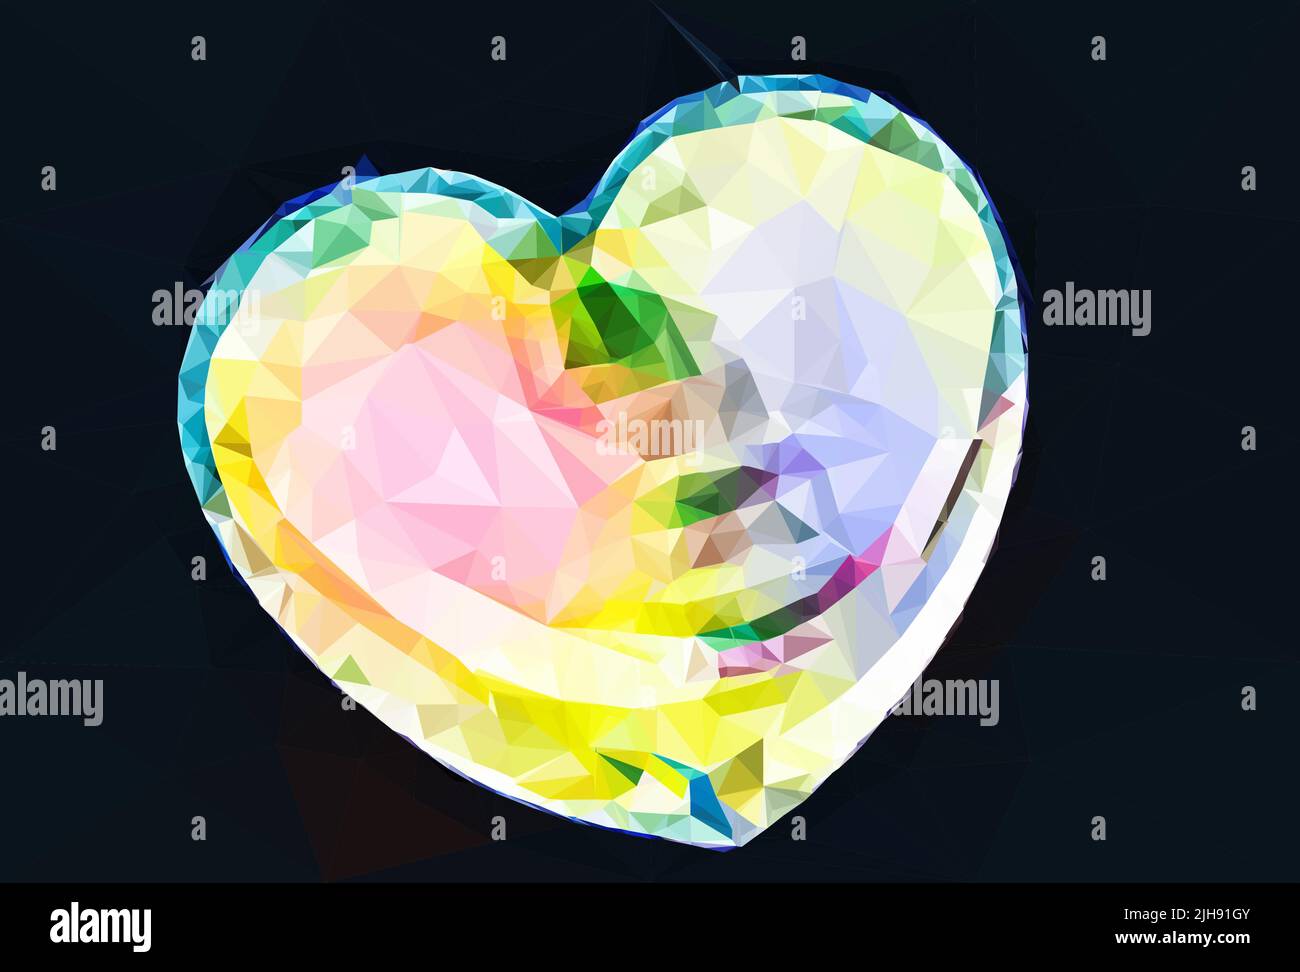 Ein LGBT-Bewegungskonzept mit Regenbogenfarben schimmert auf einem Herzen - Low-Poly-Art Stock Vektor